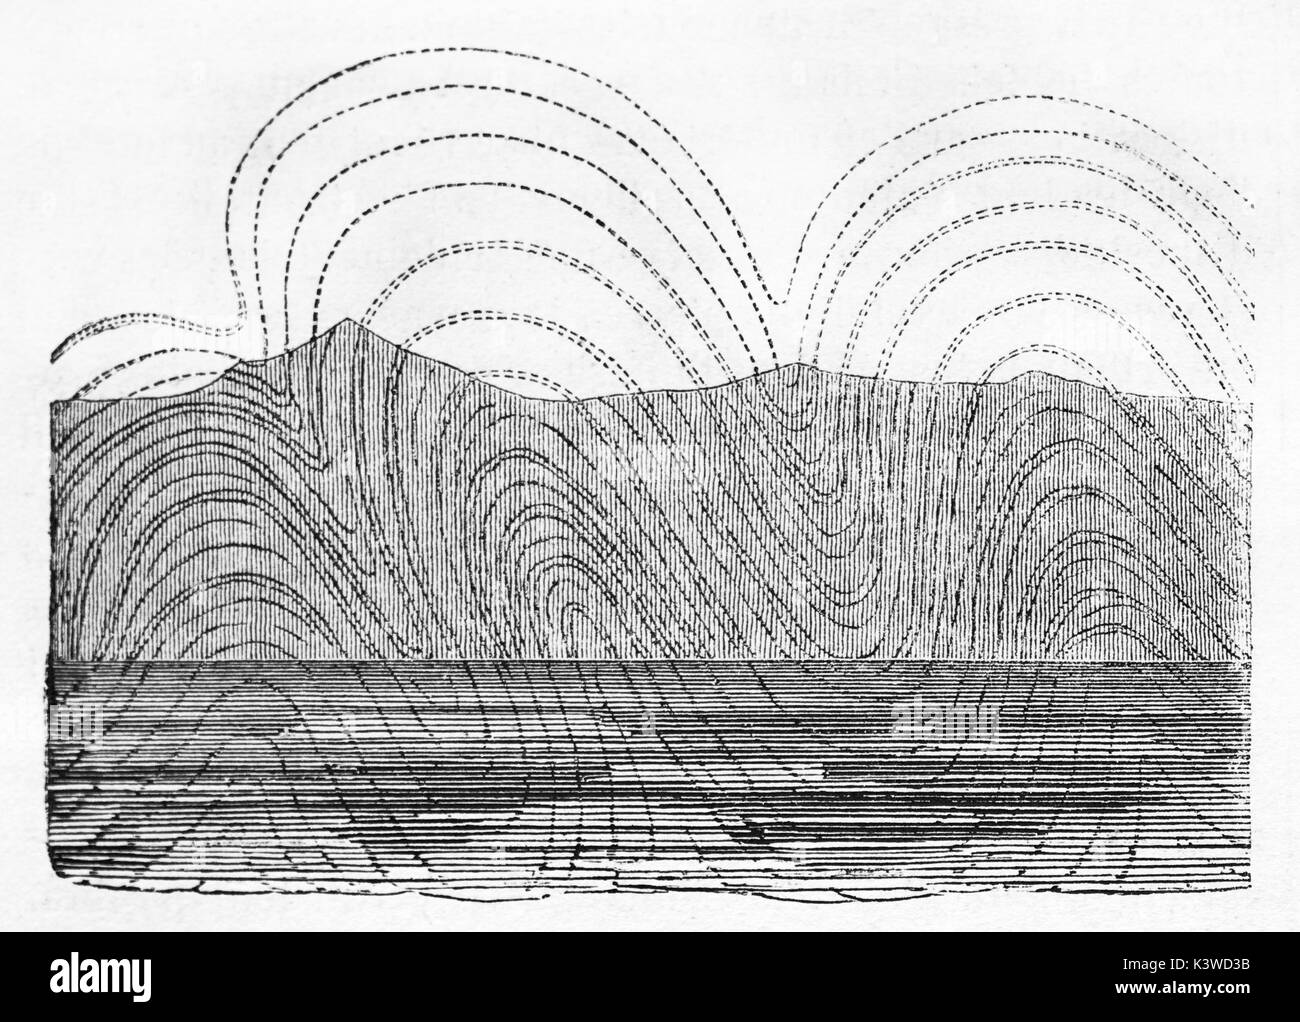 Vecchia illustrazione geologica di strati arrotondati scarpata. Da autore non identificato, pubblicato il Magasin pittoresco, Parigi, 1841 Foto Stock